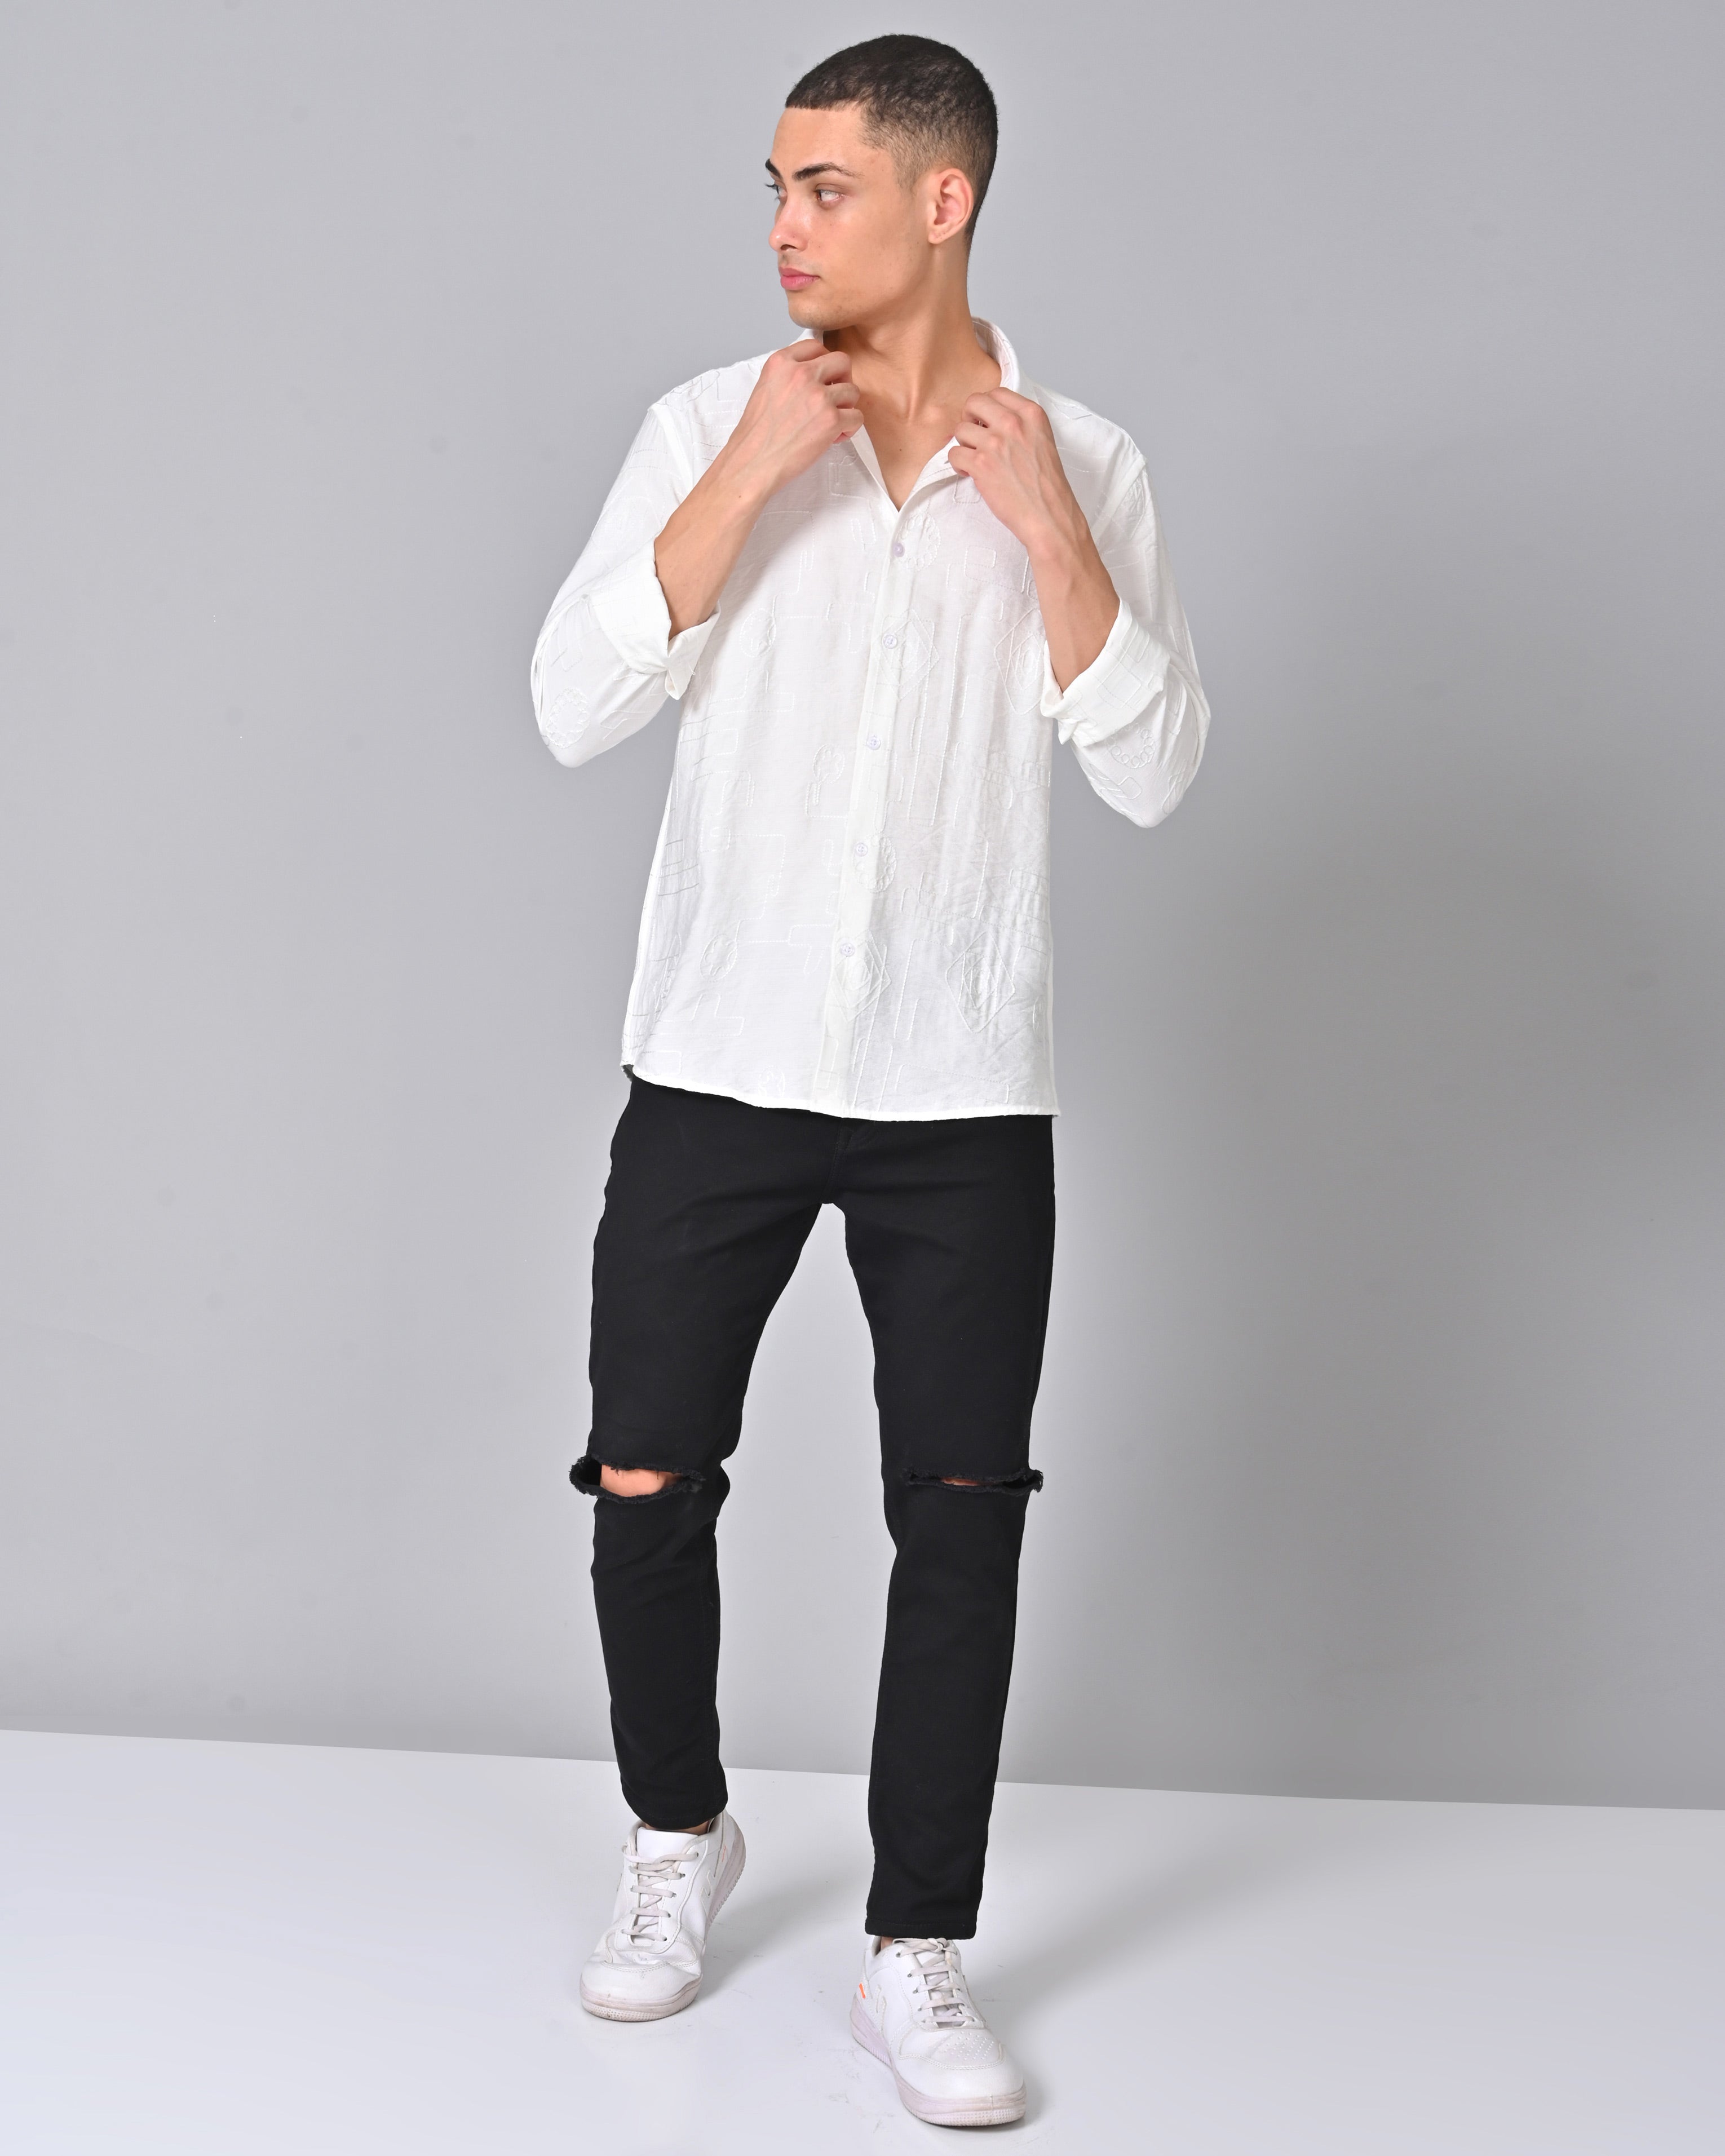 Buy Men's Embroidered Full Sleeve White Shirt Online